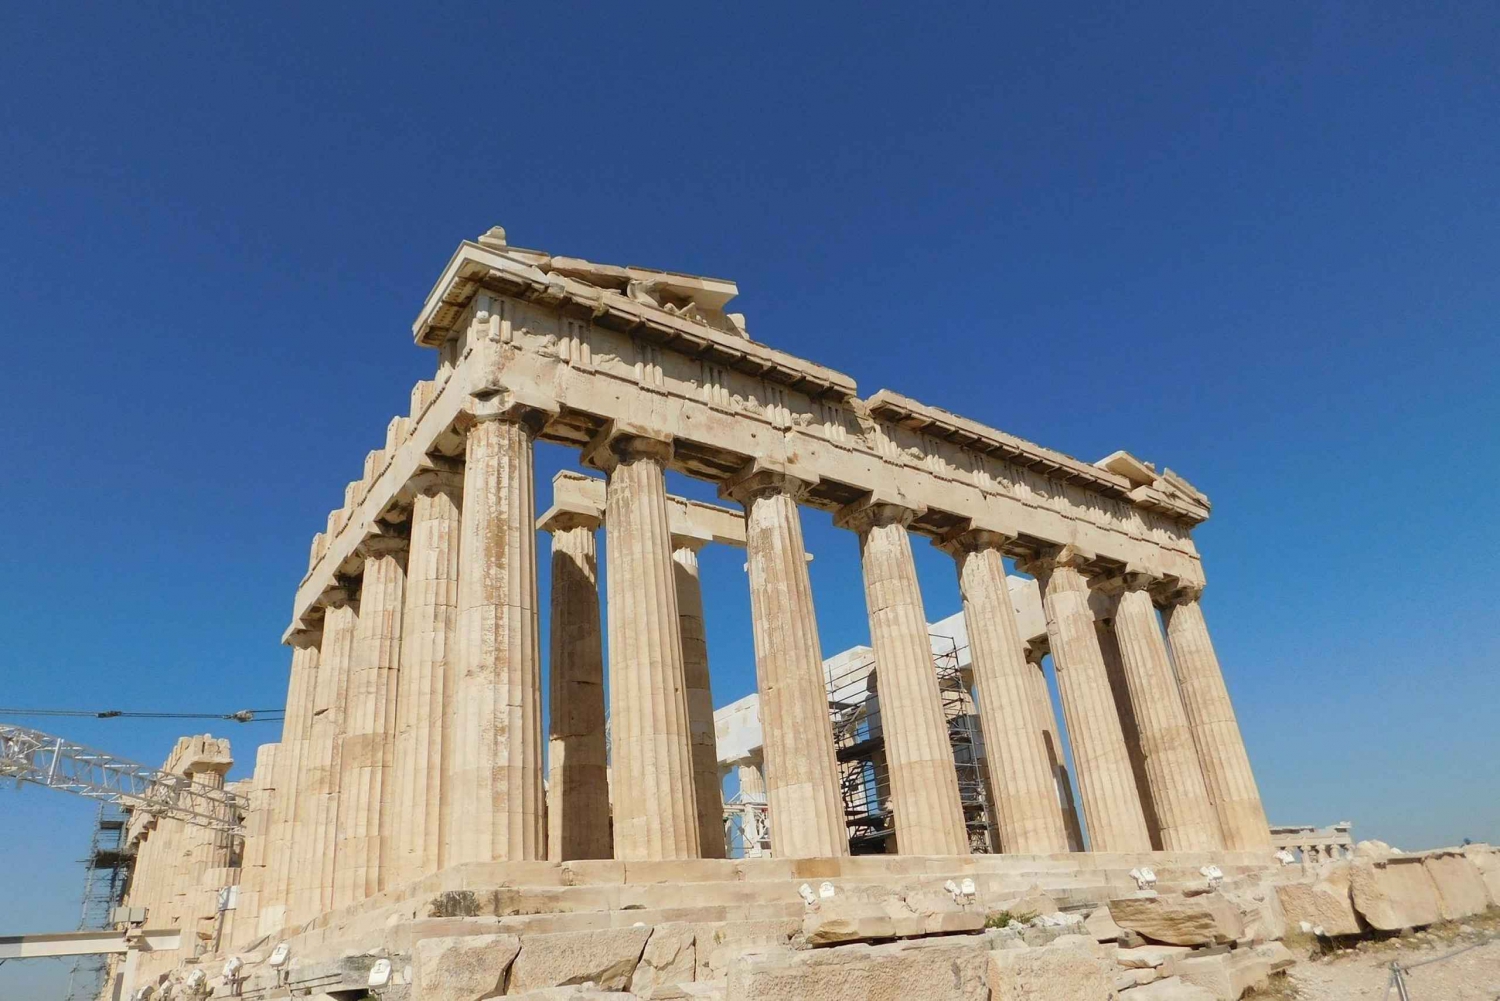 Athen: Digitale Sightseeing-Tour mit über 100 Attraktionen